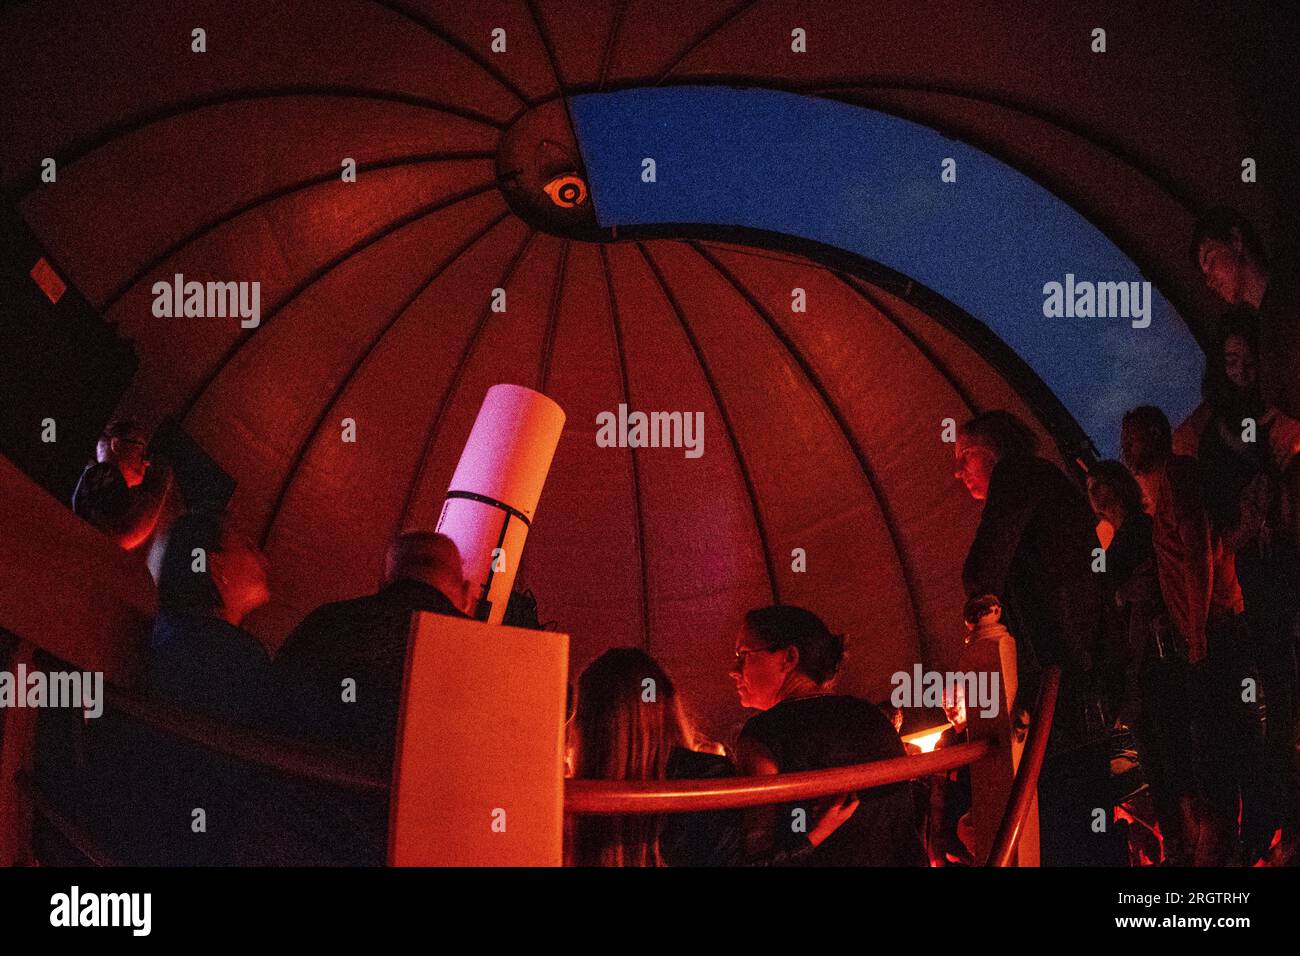 LATTROP - Interessenten versuchen trotz Wolken und Regen, einen Blick auf den Meteoritenschauer im Cosmos-Observatorium in Lattrop, Twente, zu erhaschen. Für zwei Nächte können die Sternschnuppen bewundert werden, da es dieses Jahr kein Mondlicht gibt. ANP VINCENT JANNINK netherlands Out - belgium Out Credit: ANP/Alamy Live News Stockfoto